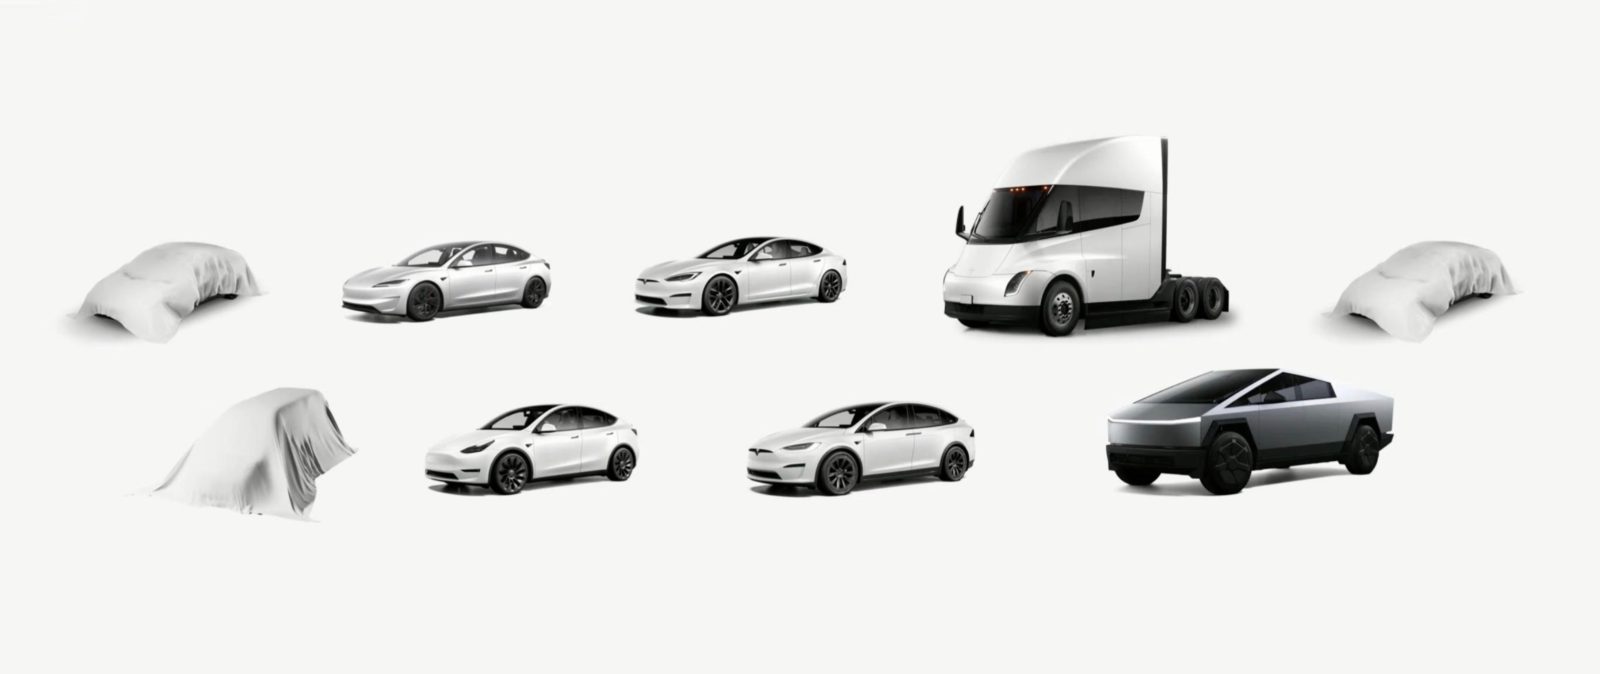 Tesla vehicle lineup